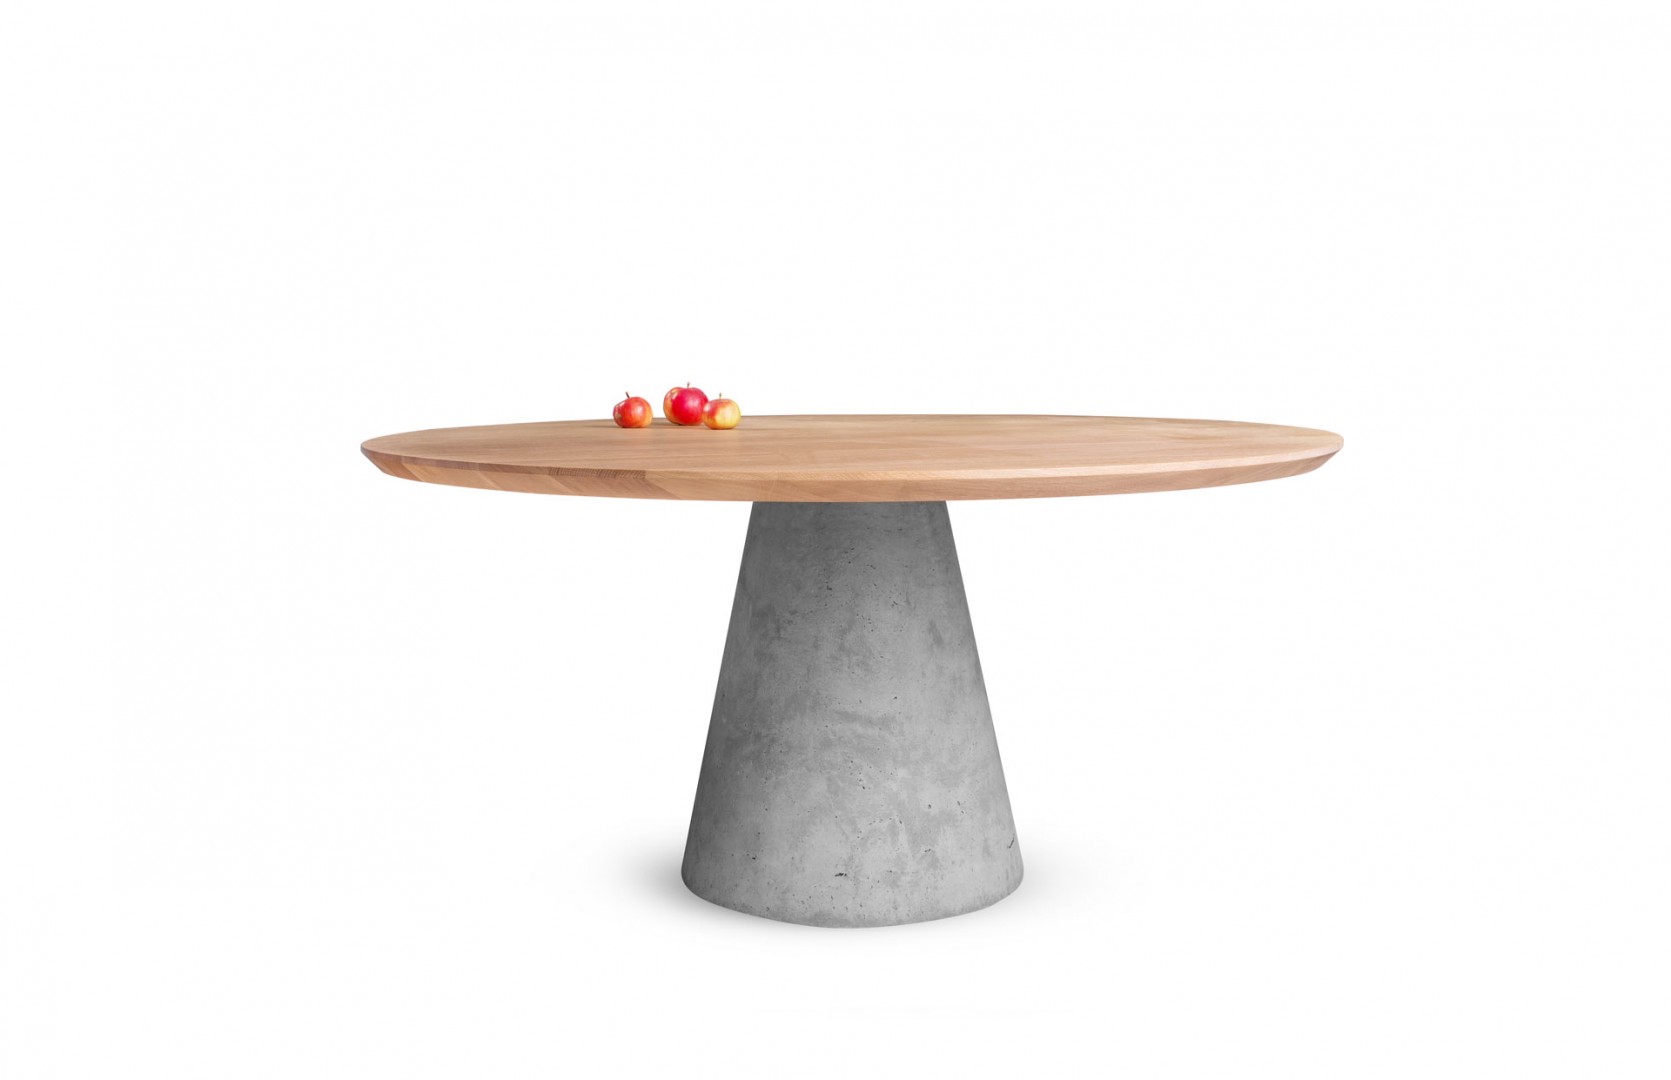 okrúhly jedálenský stôl TAP z masívneho dreva s betónovou podnožou, dubový okrúhly stôl, masívny okrúhly stôl